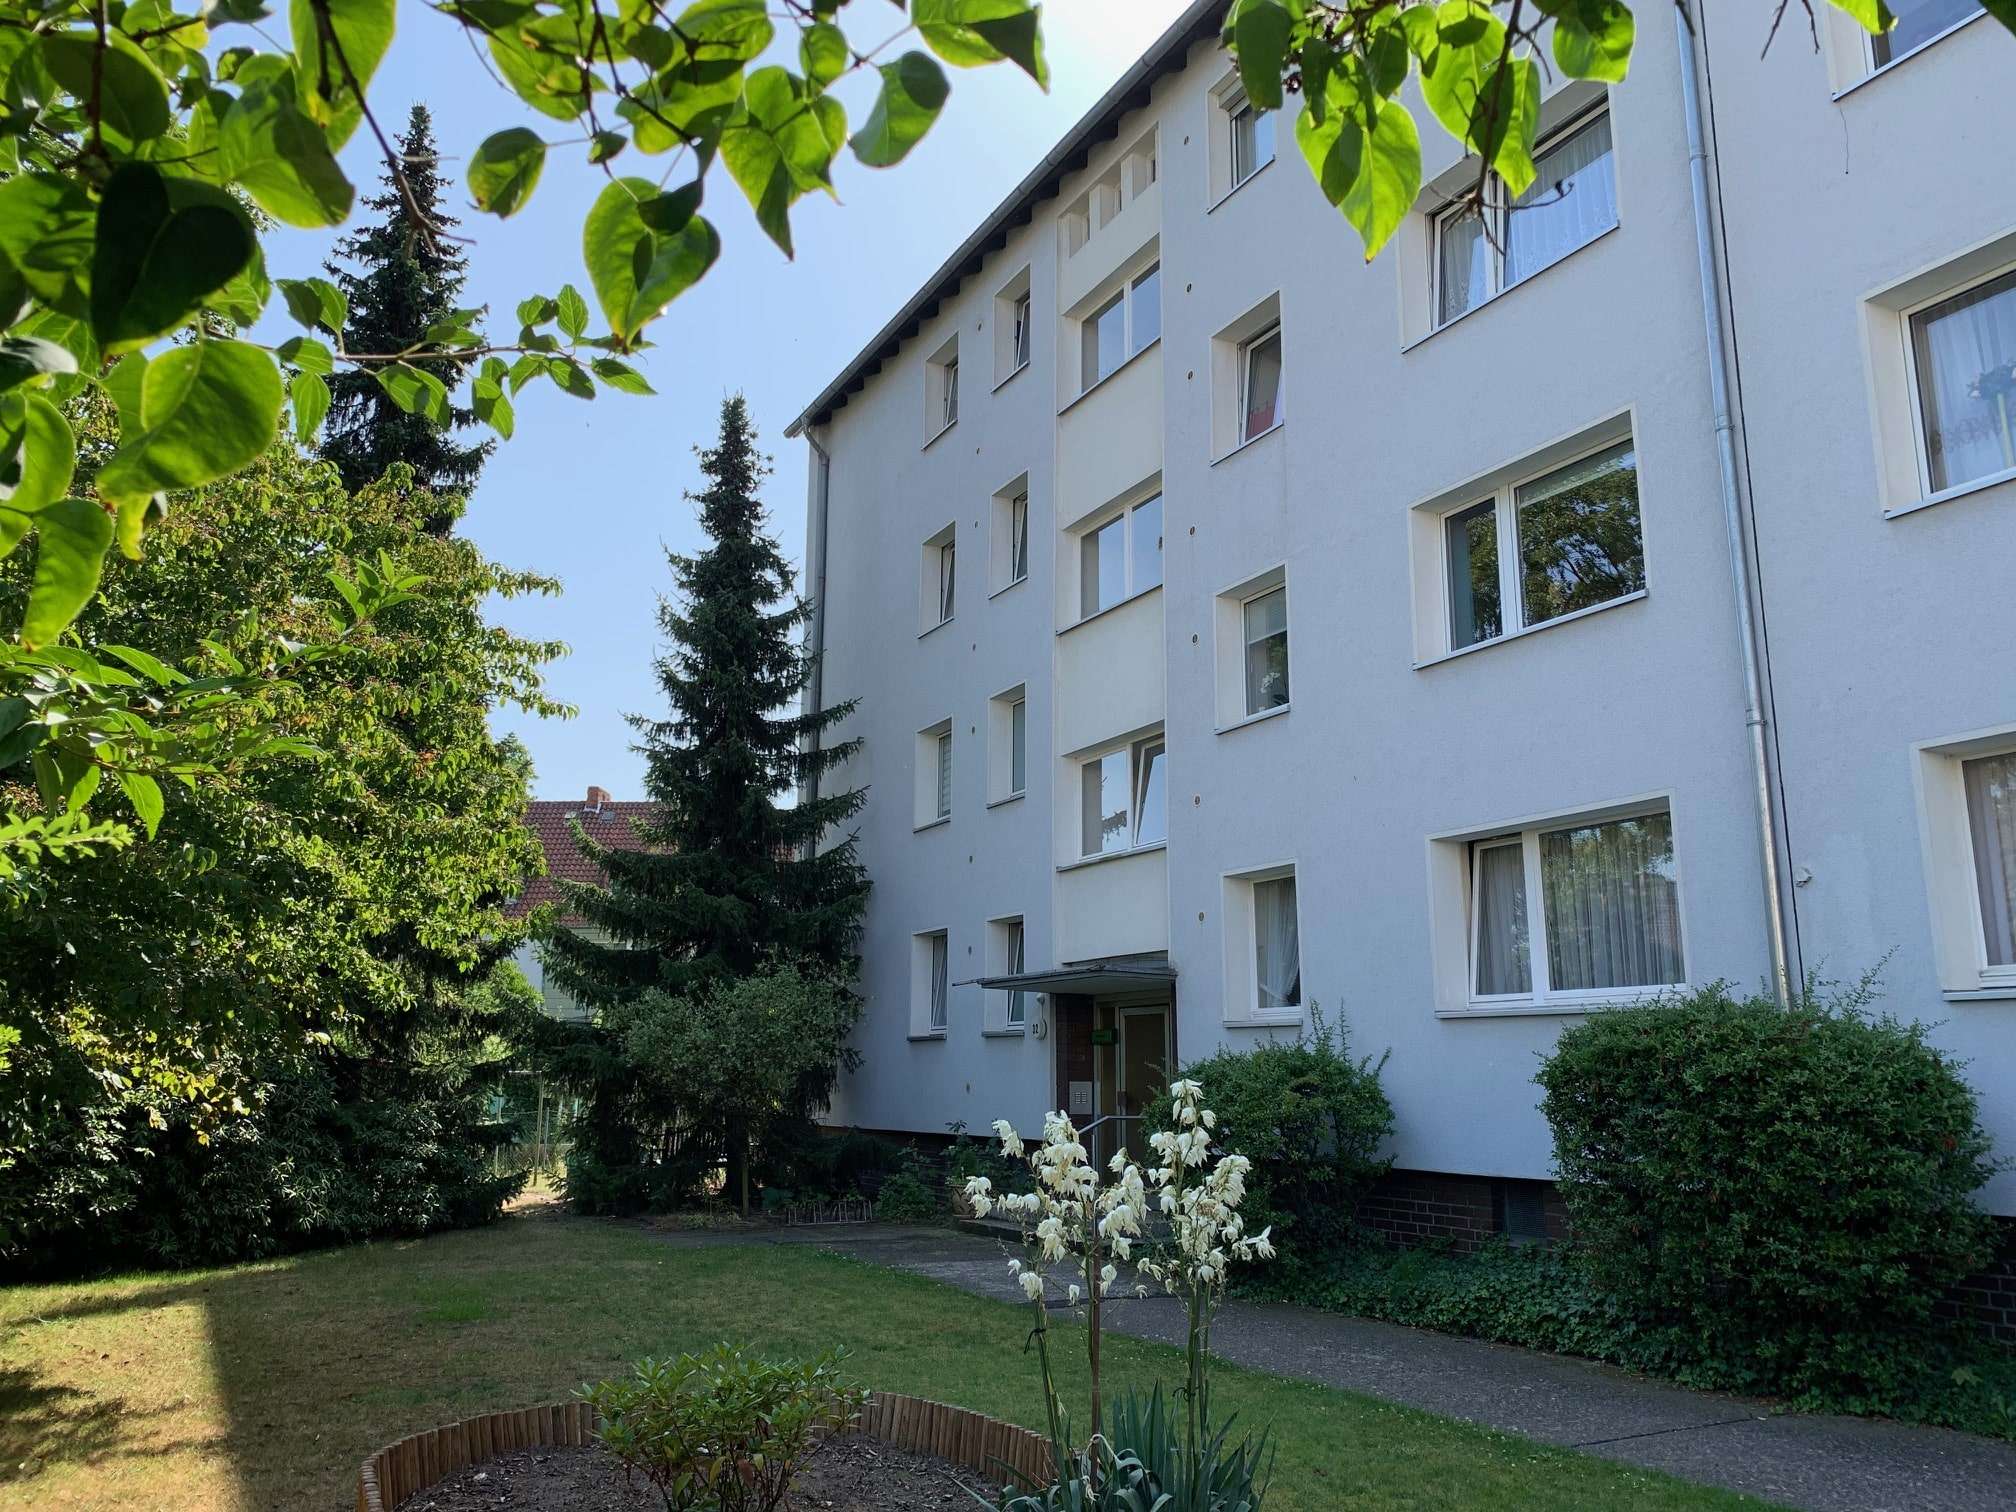 Vermietete 2-Zimmer-Eigentumswohnung in attraktiver und zentraler Wohnlage von Letter, 30926 Seelze, Wohnung